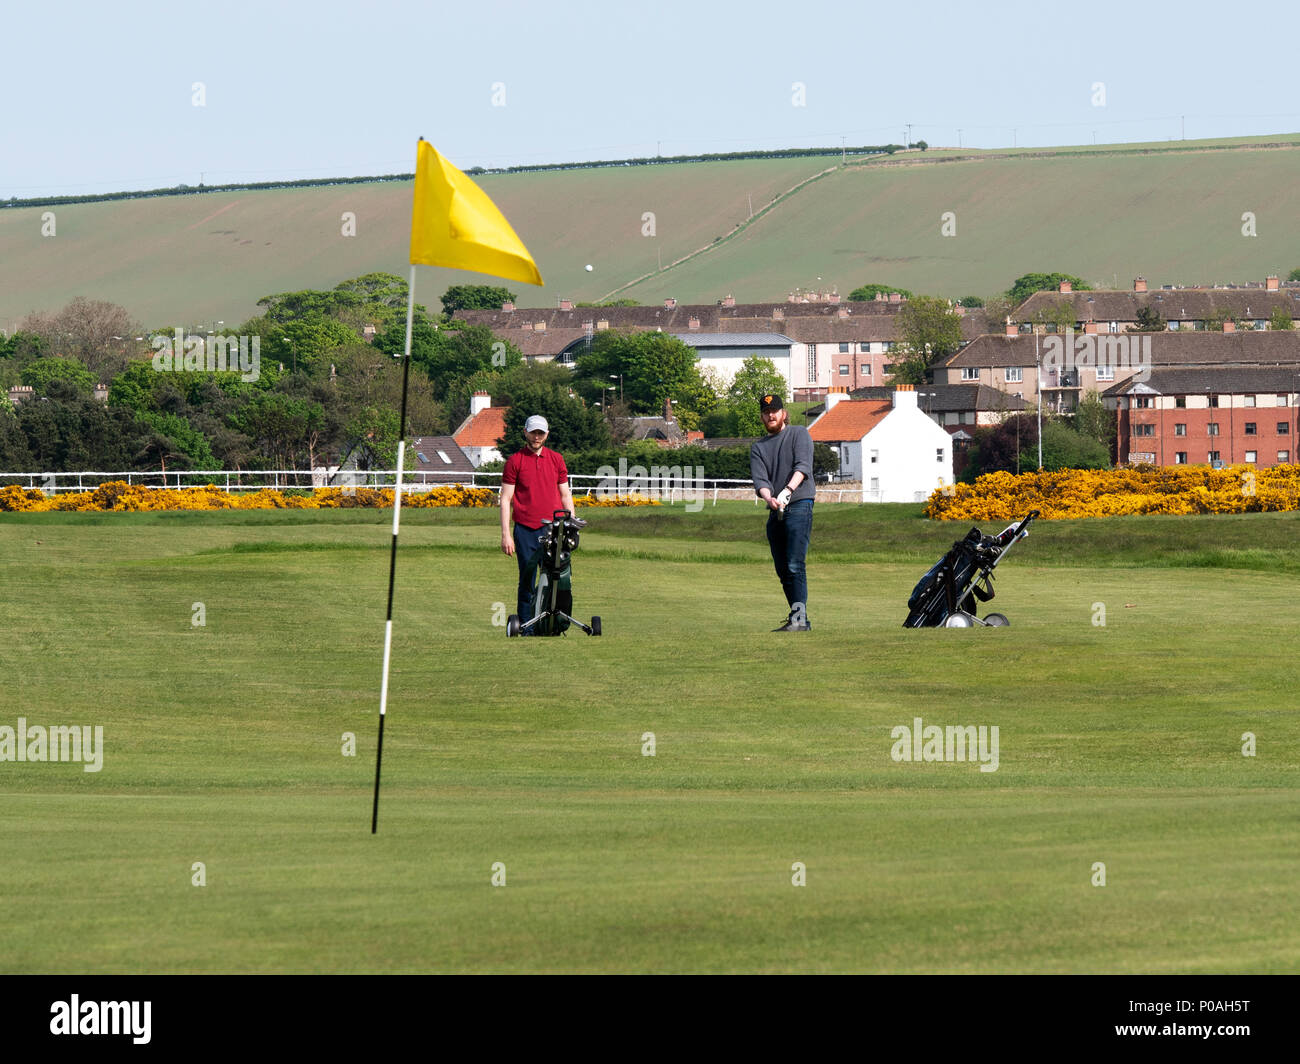 Les golfeurs de l'ancien terrain de golf à Musselburgh, East Lothian, en Ecosse, l'un des plus vieux terrains de golf dans le monde. Banque D'Images